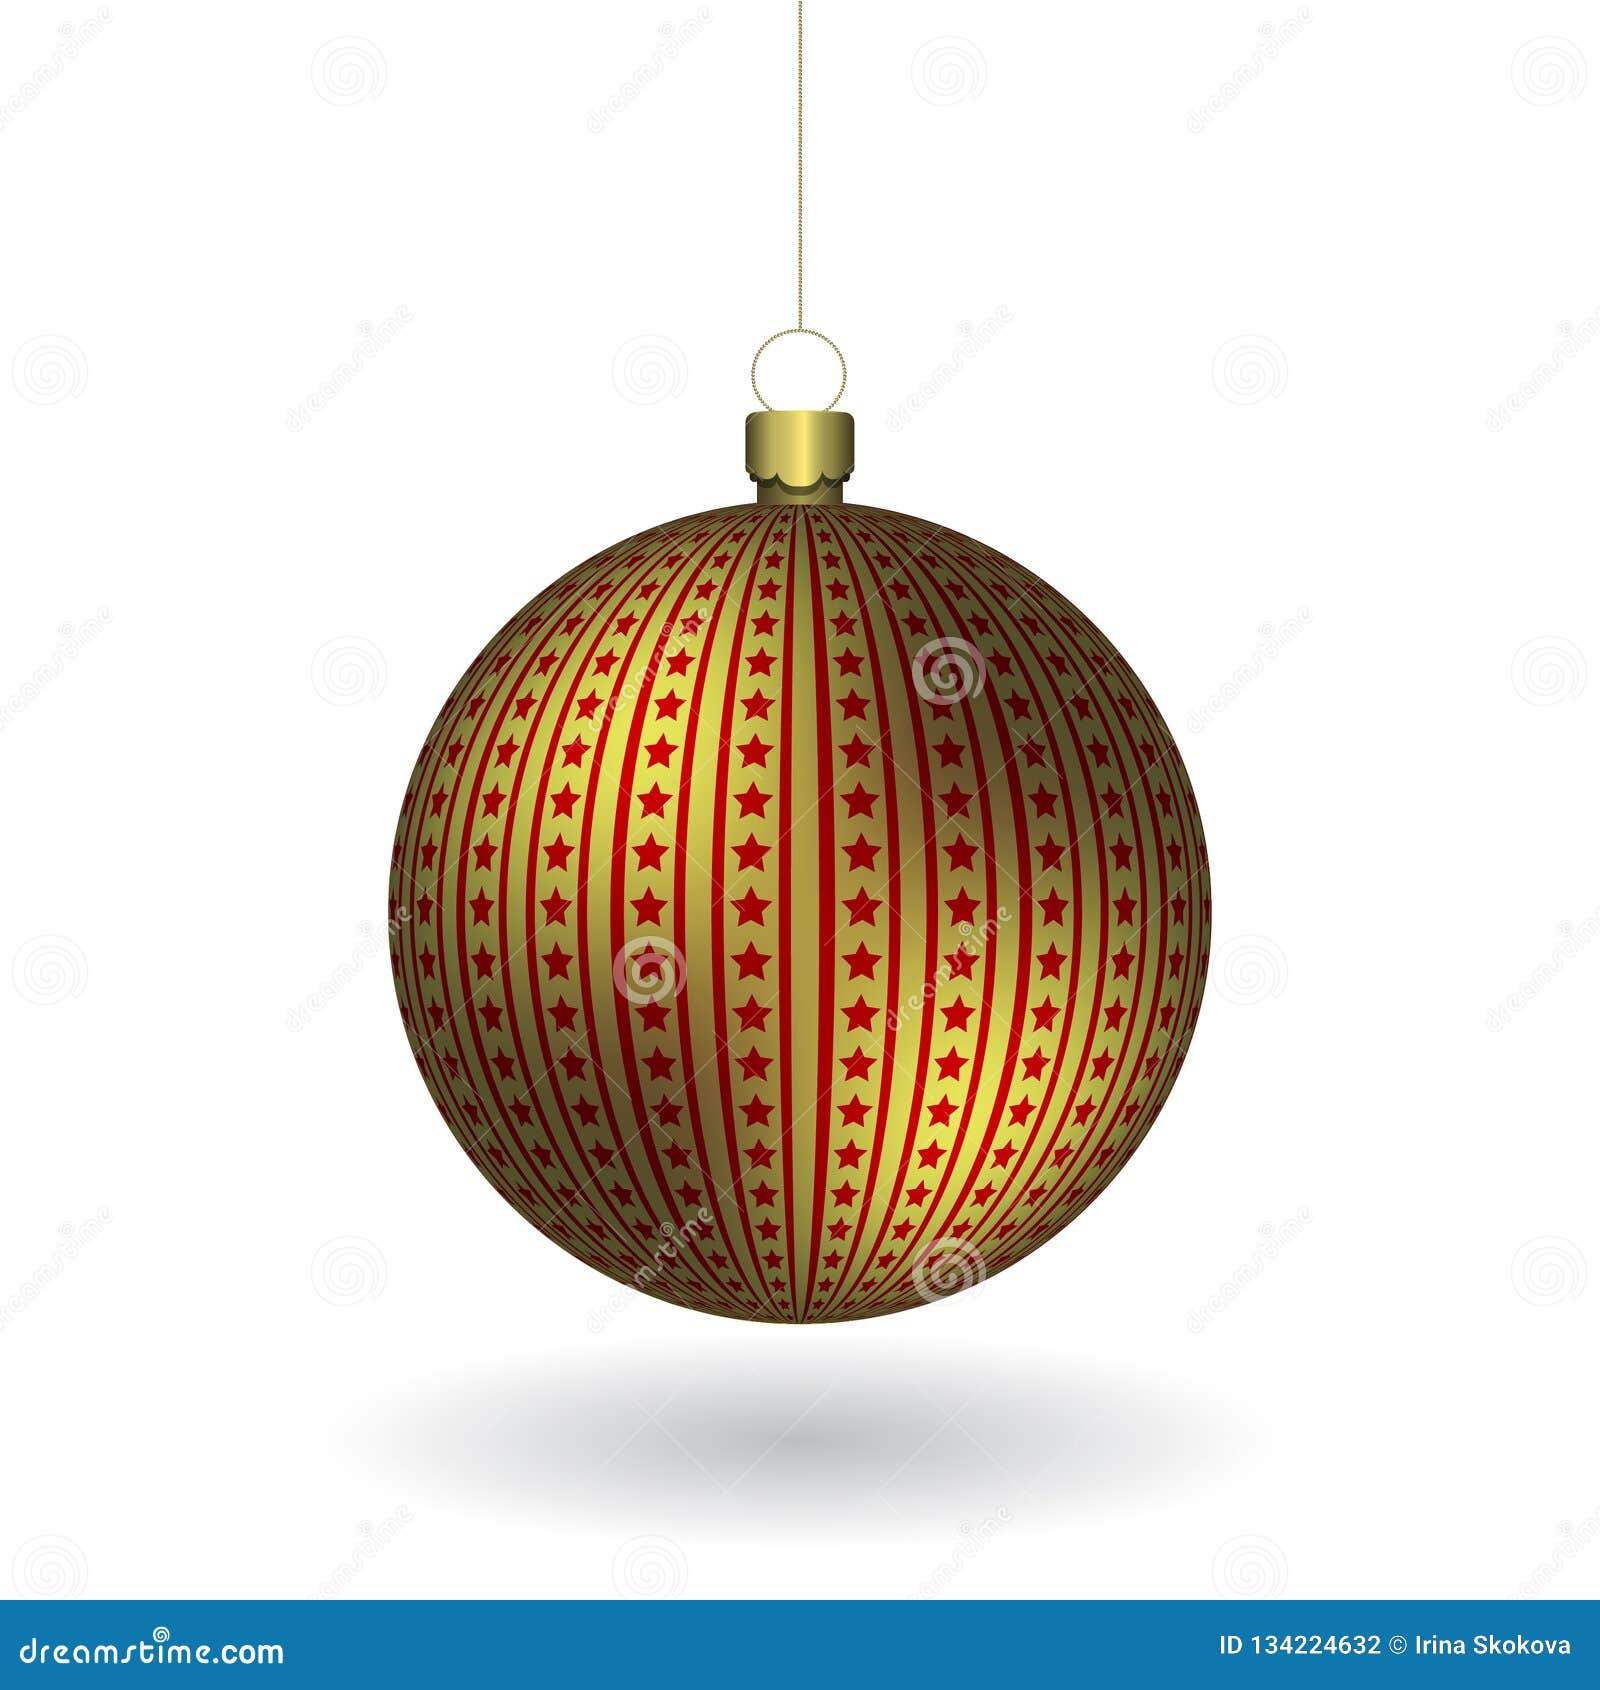 golden christmass ball hanging on a golden chain